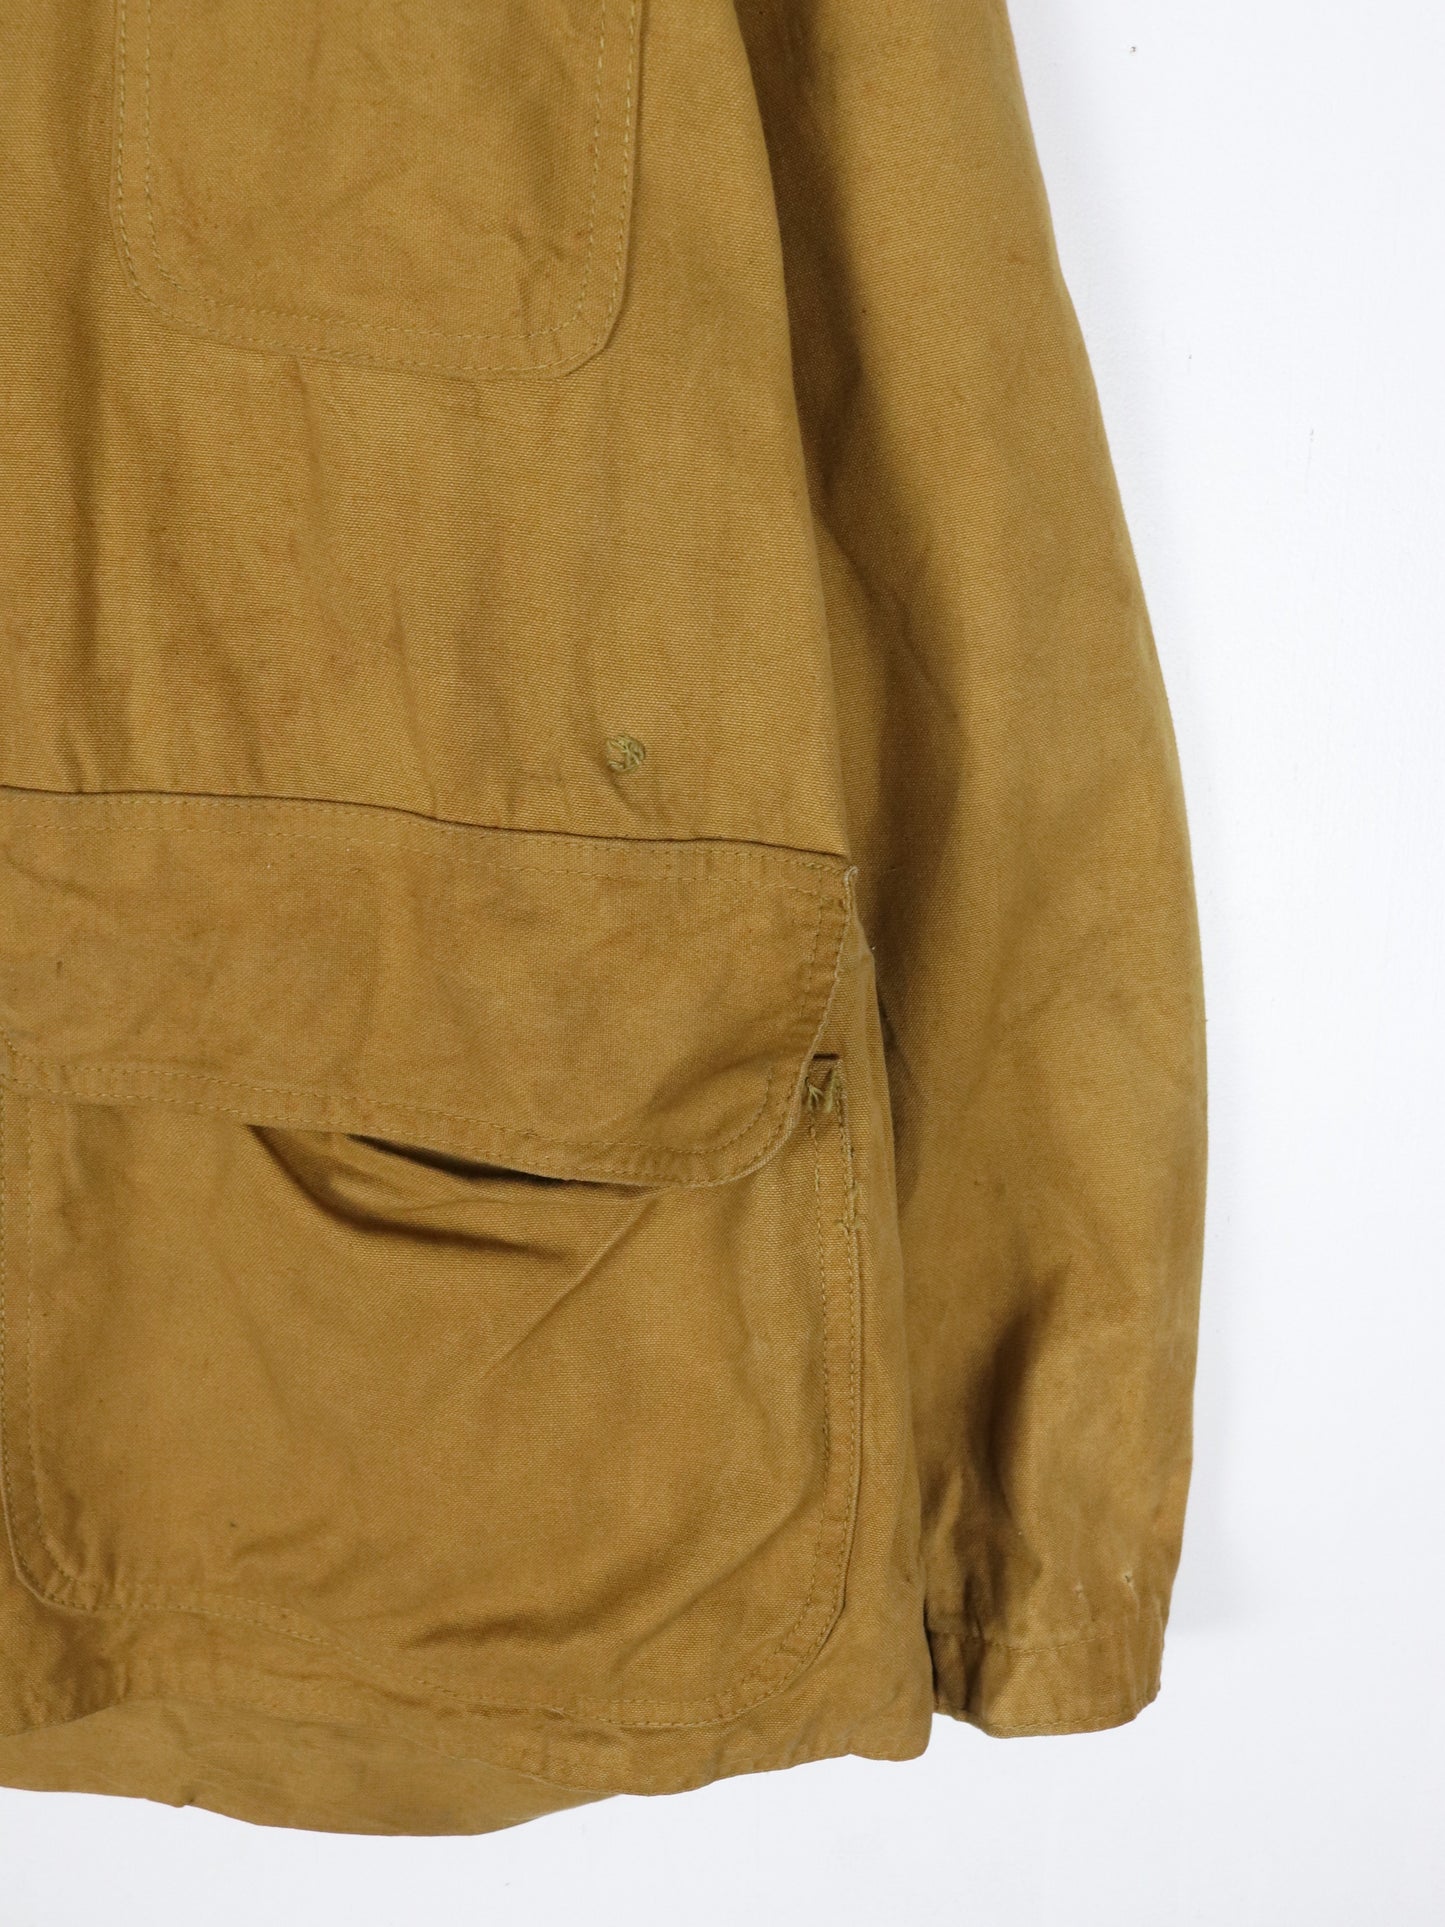 Vintage American Field Sportswear Jacket Mens Large Brown 60s Hunting Outdoors